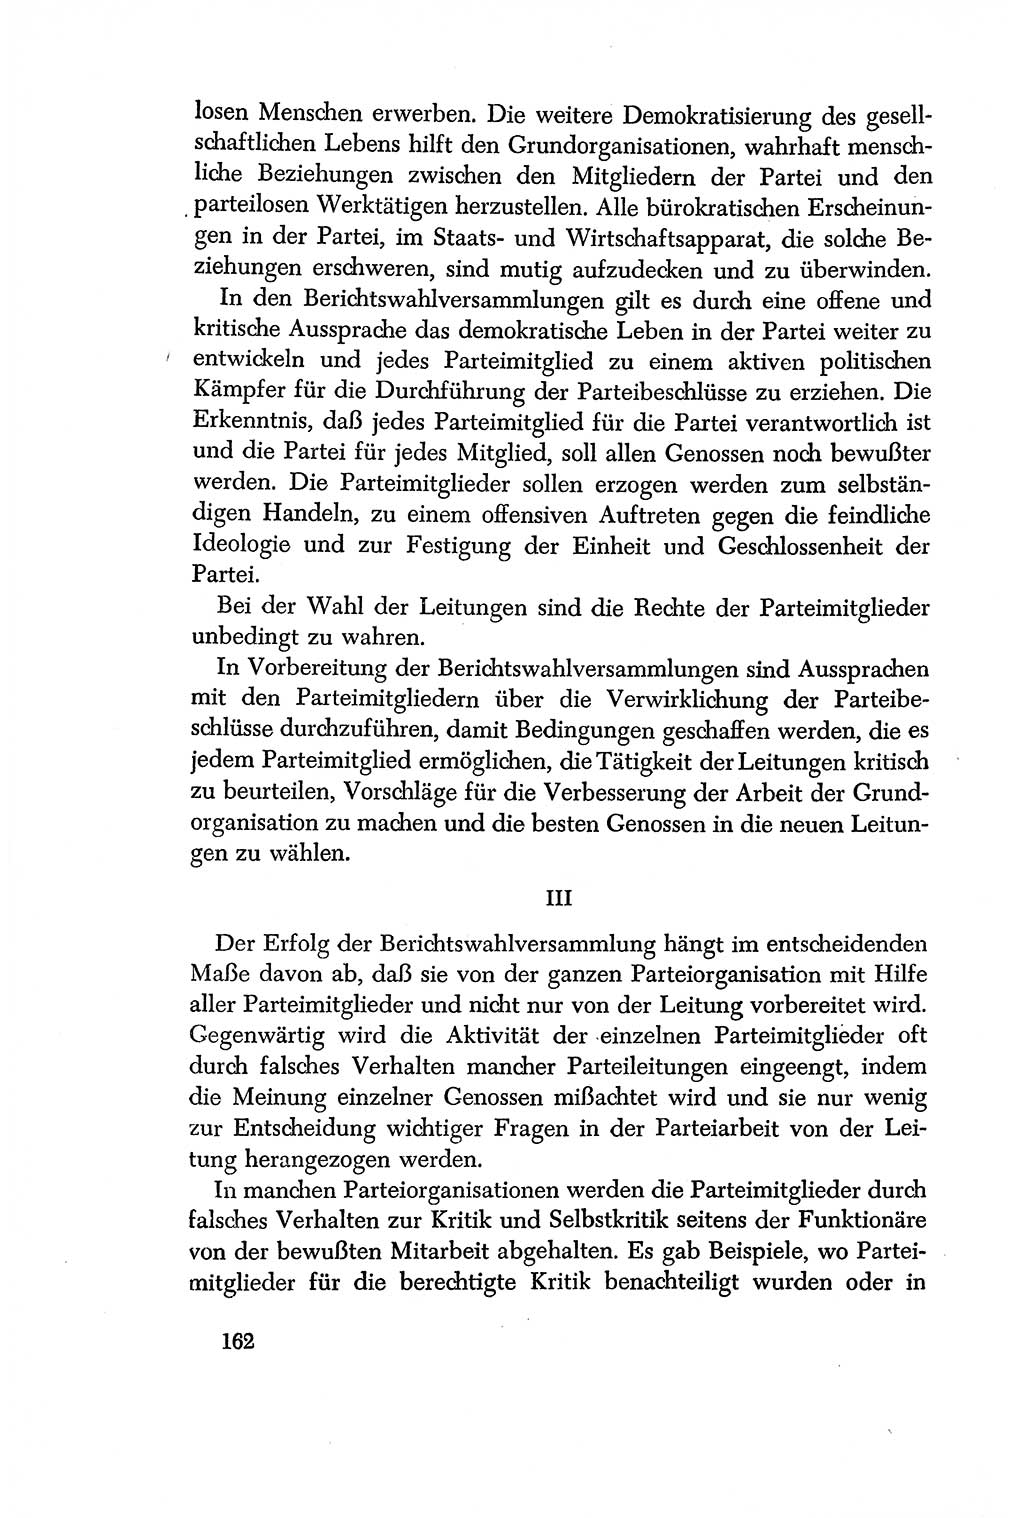 Dokumente der Sozialistischen Einheitspartei Deutschlands (SED) [Deutsche Demokratische Republik (DDR)] 1956-1957, Seite 162 (Dok. SED DDR 1956-1957, S. 162)